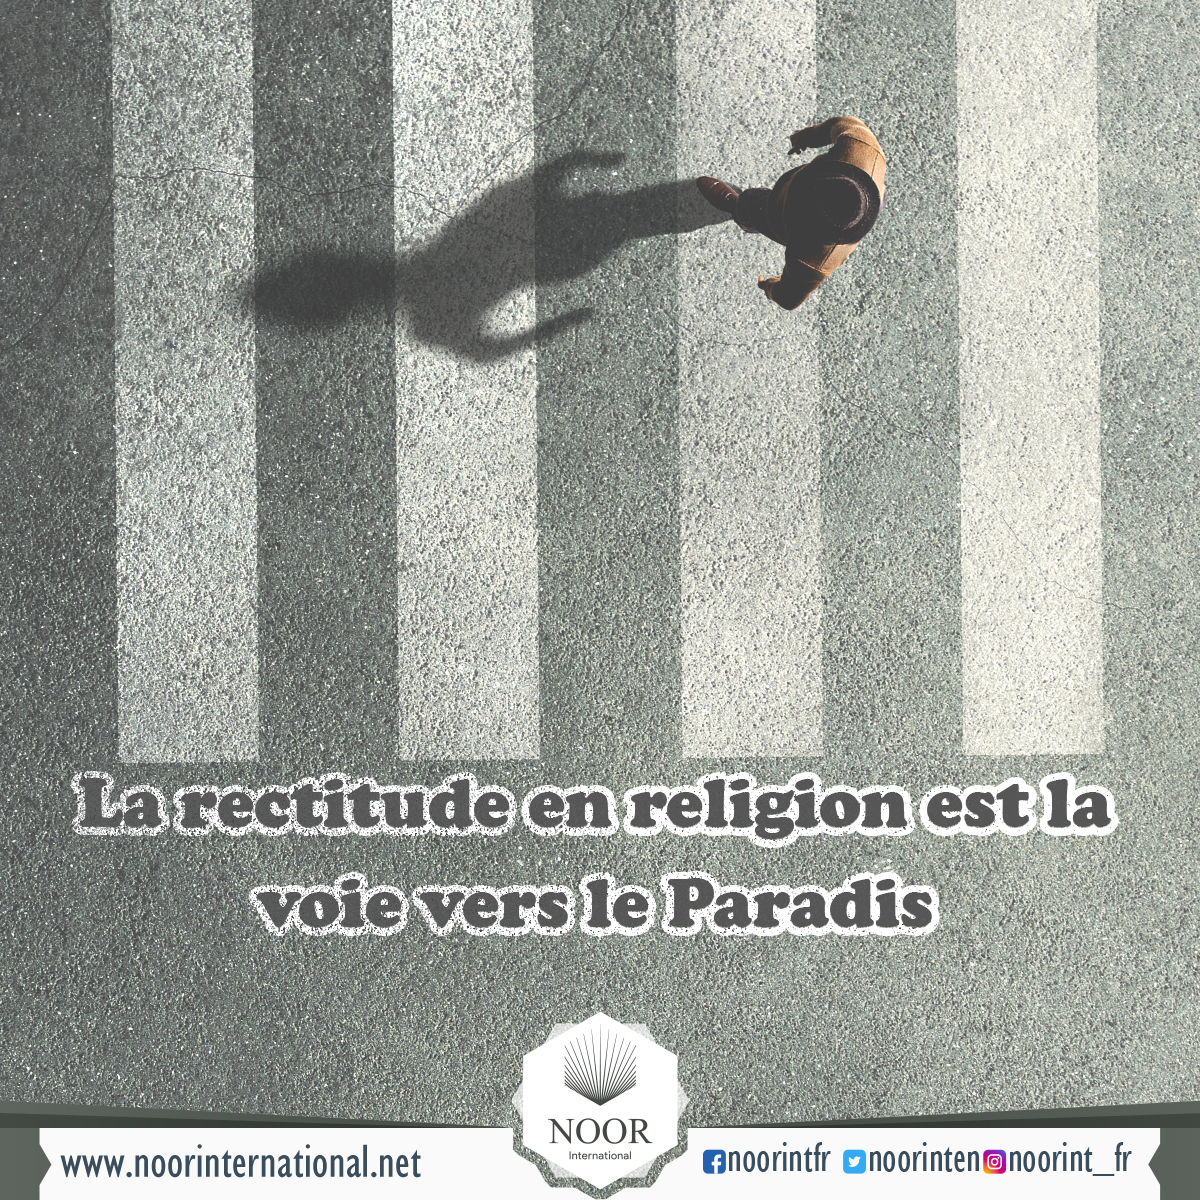 La rectitude en religion est la voie vers le Paradis